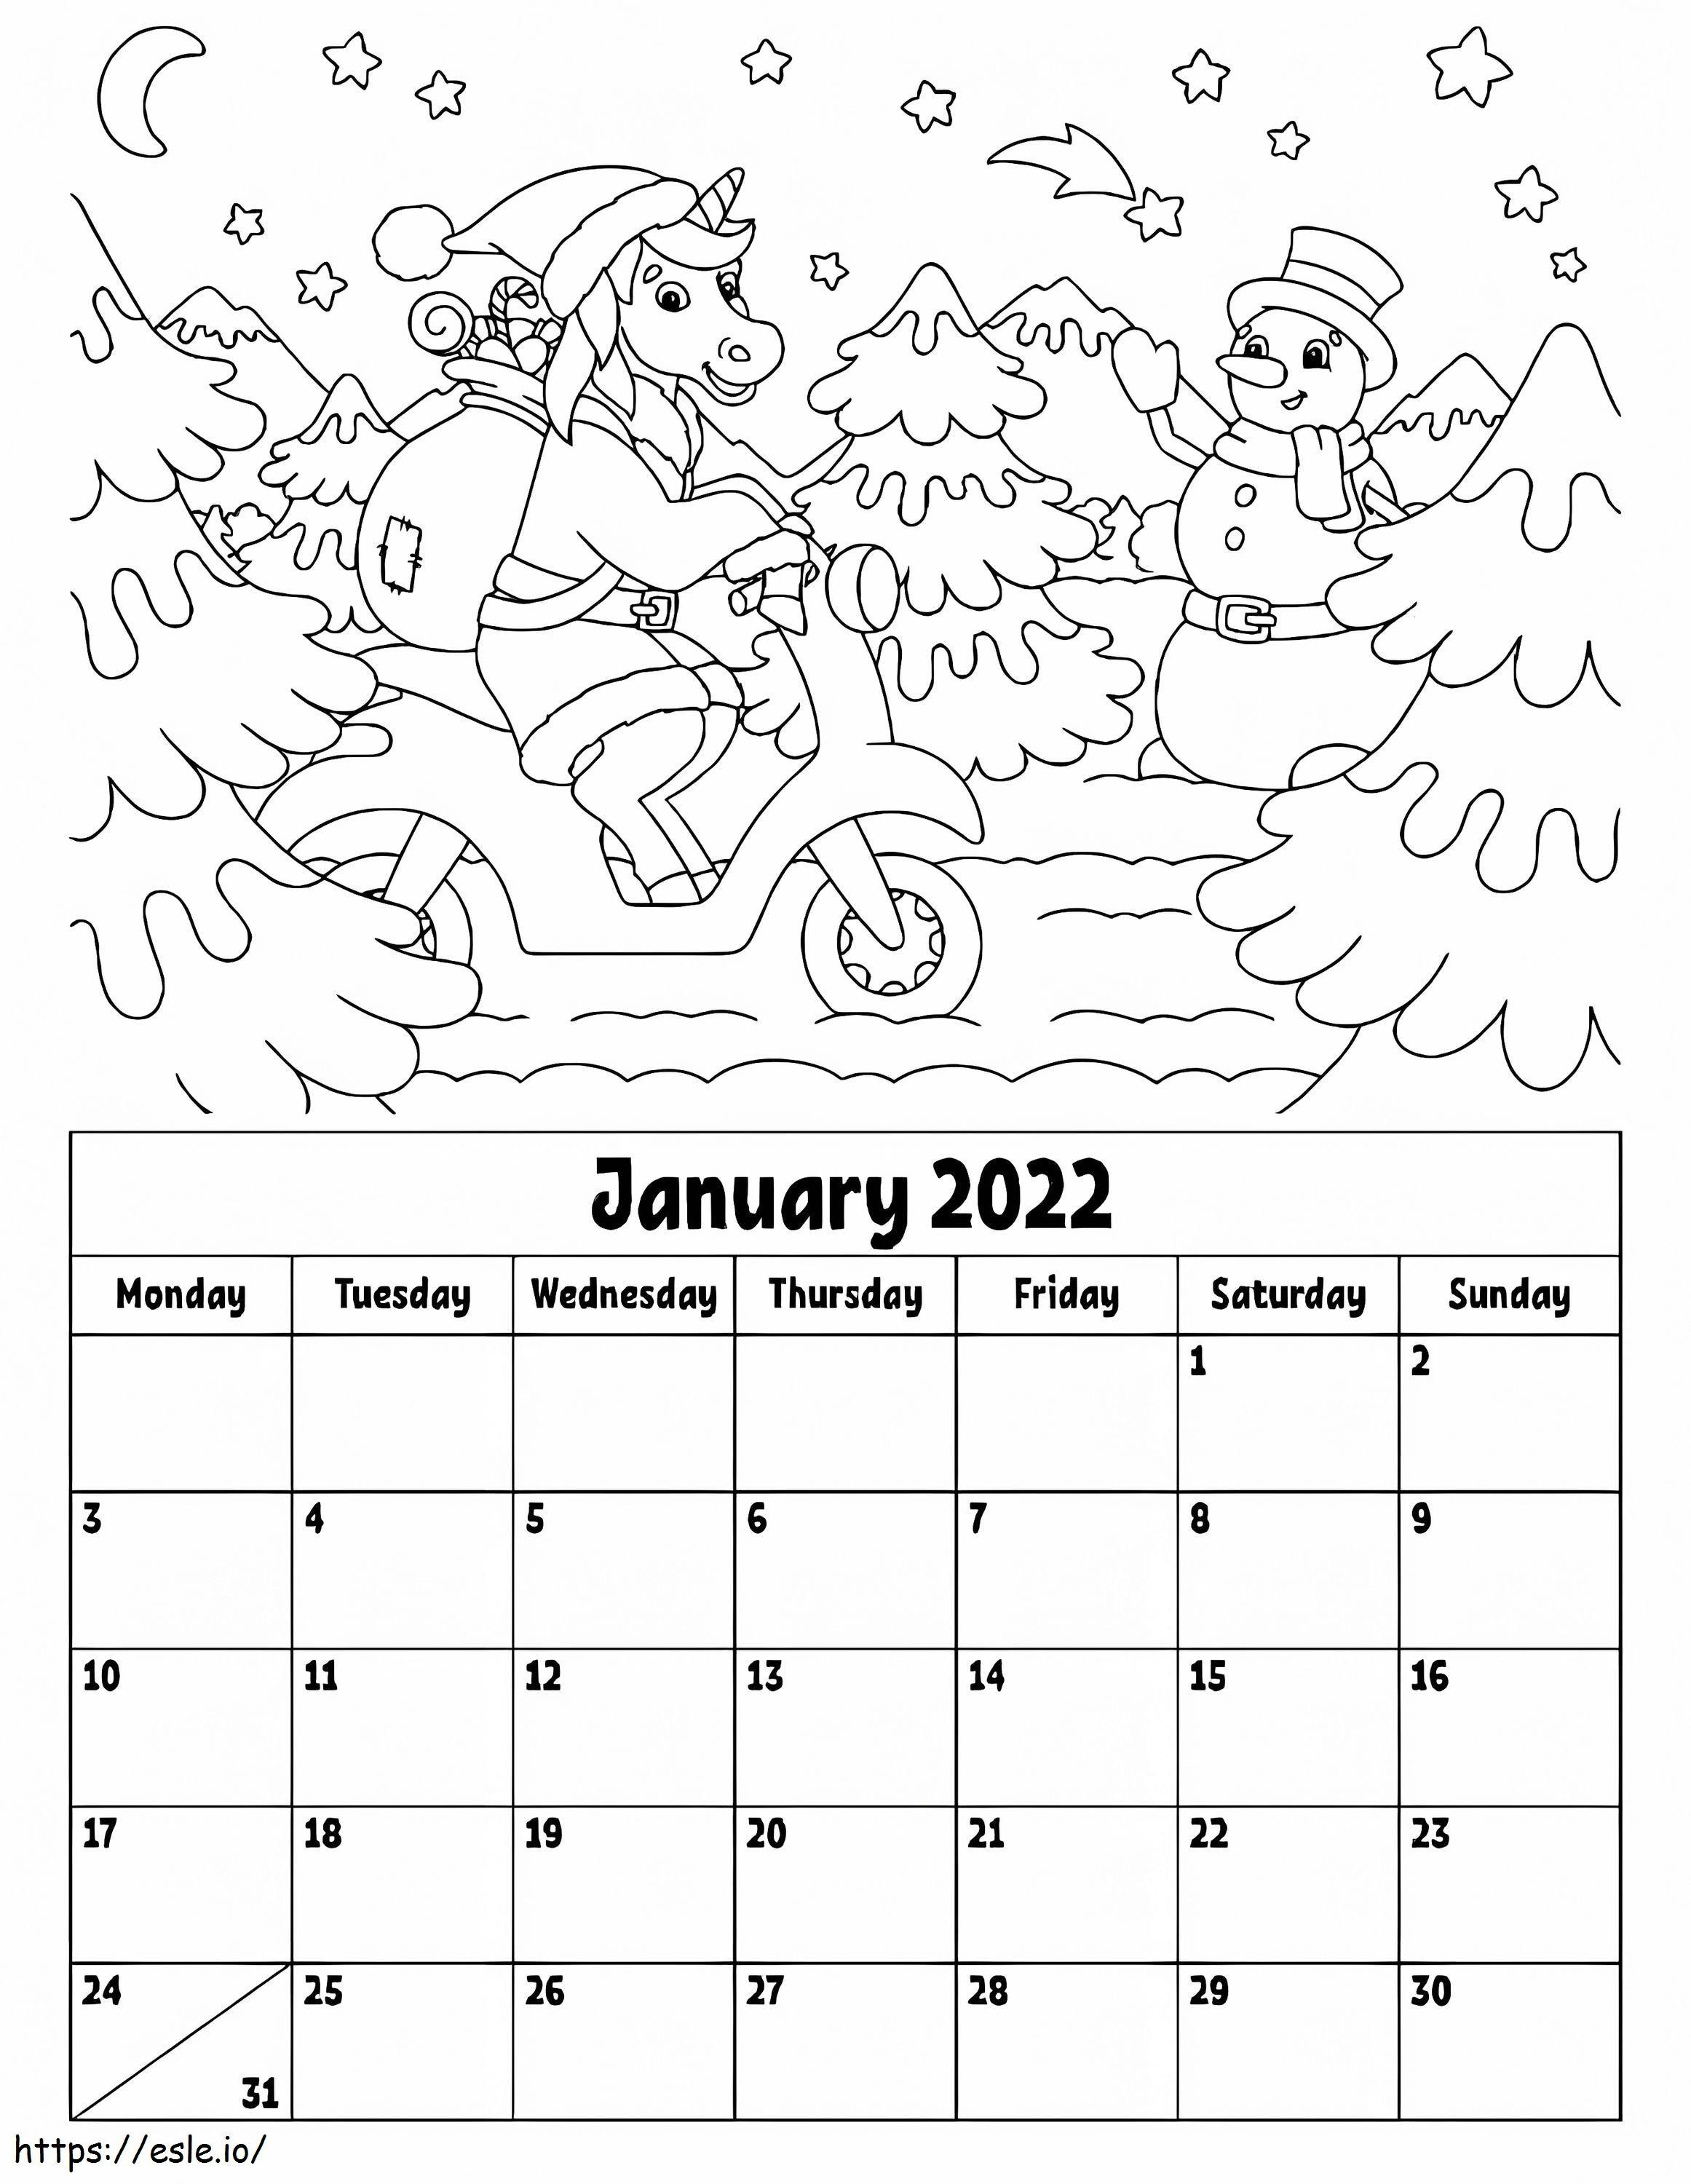 Calendario enero 2022 para colorear